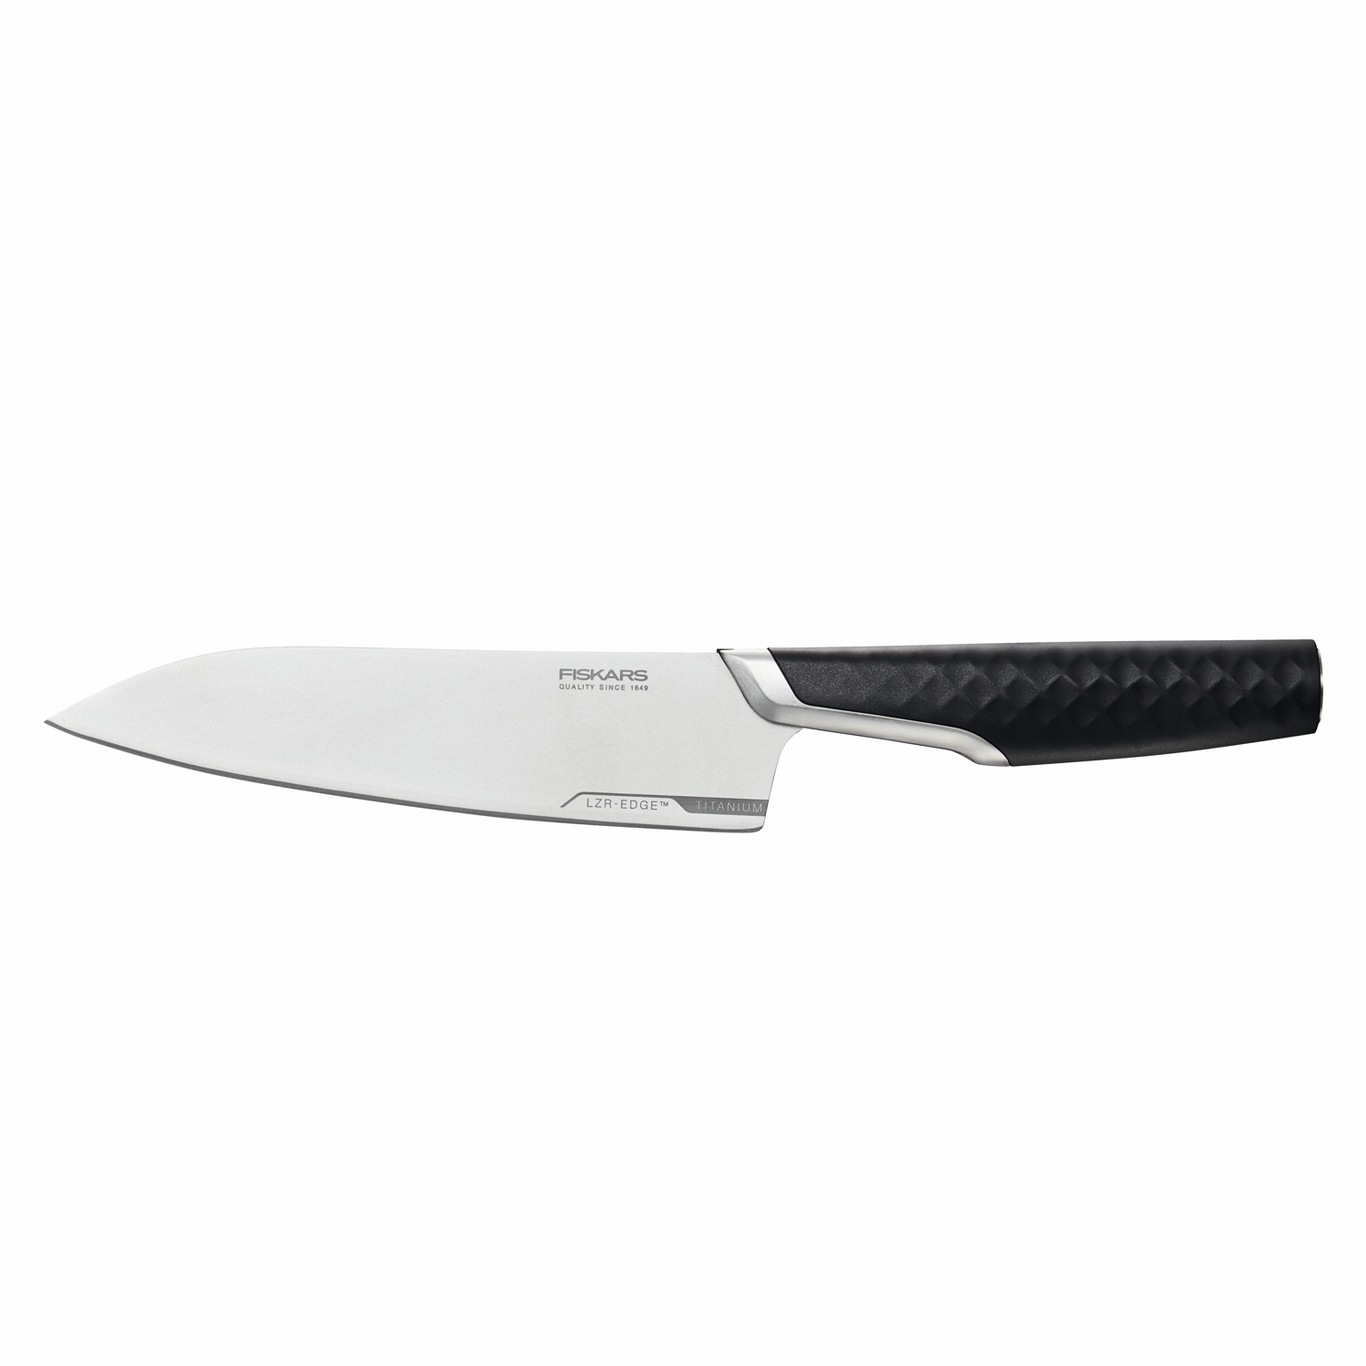 Titanium Chef's Knife, 16 cm